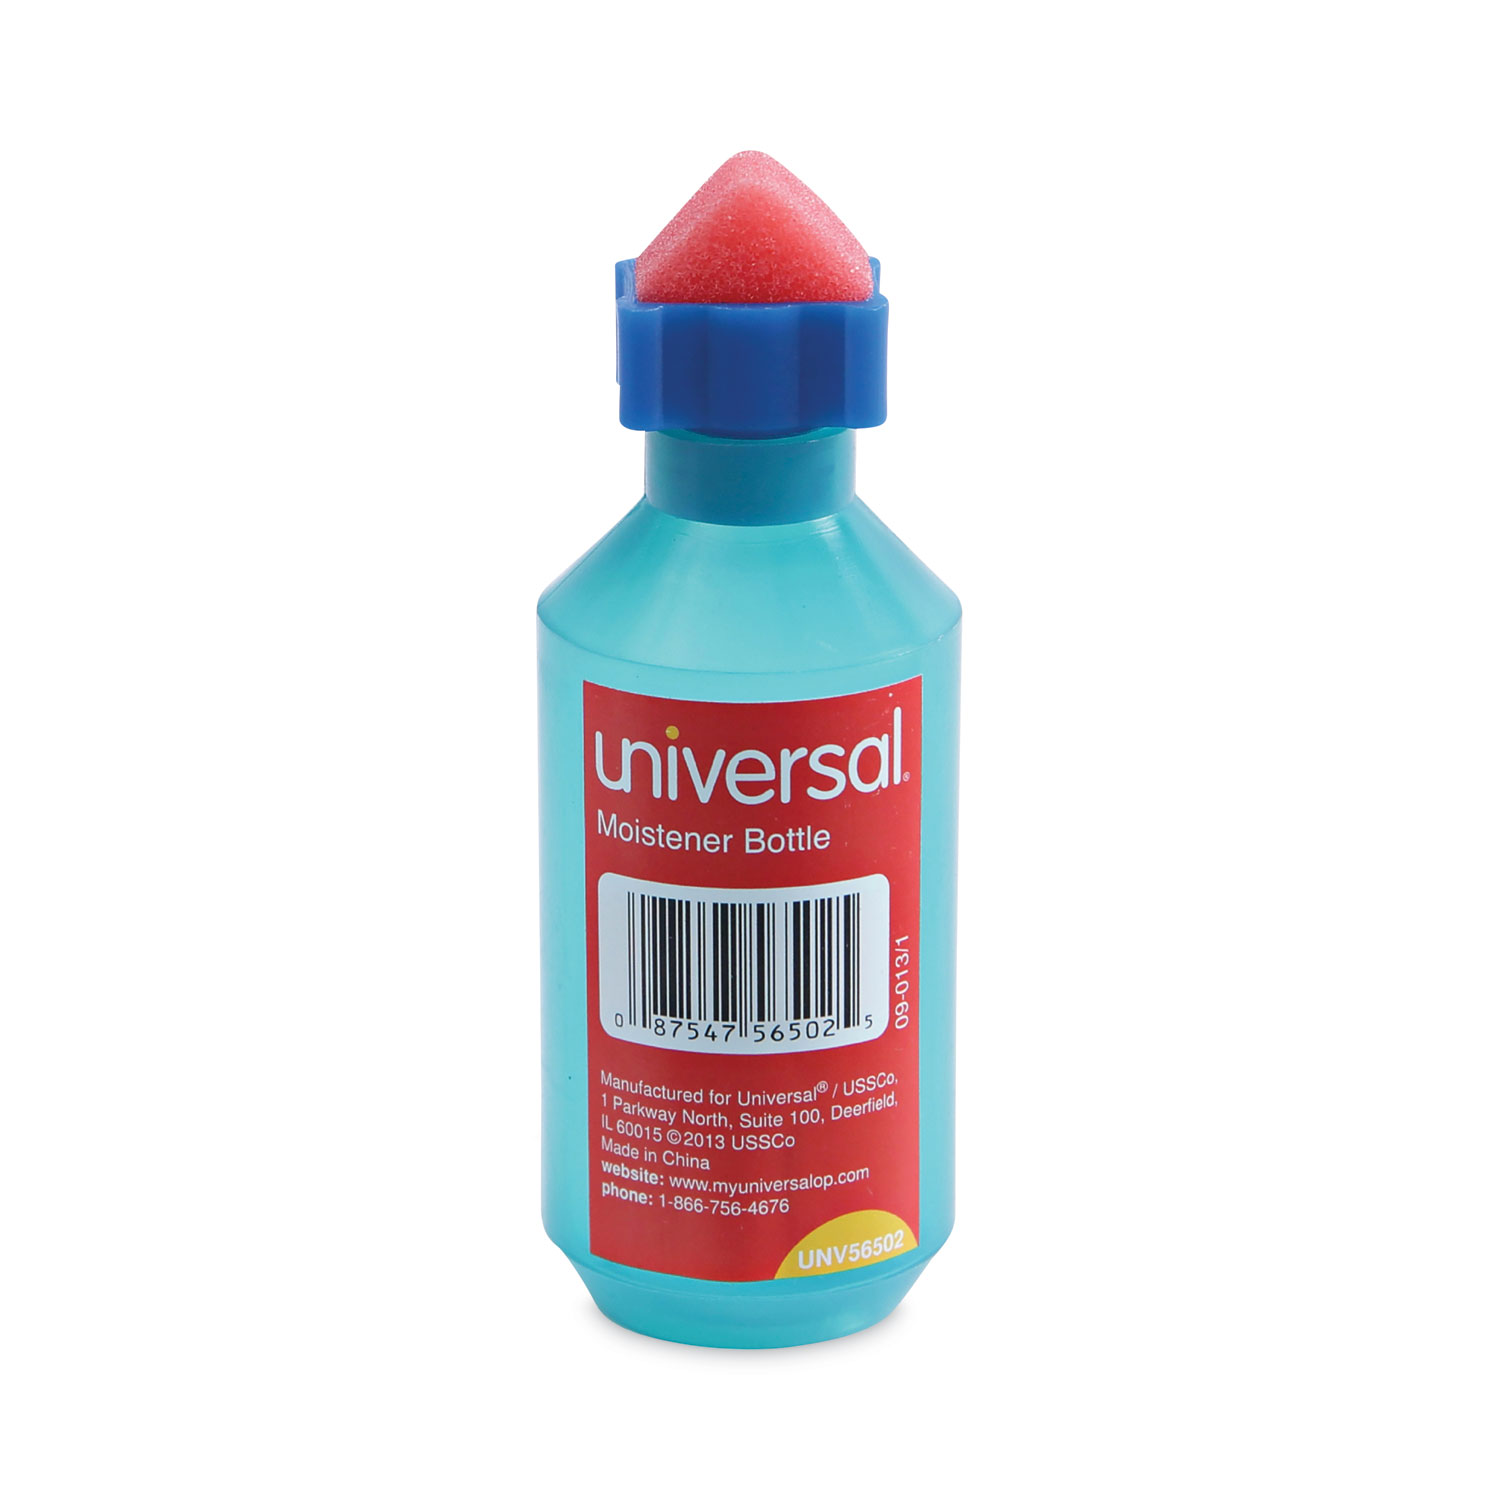 Universal - UNV56502 - Squeeze Bottle Moistener, 2 oz, Blue